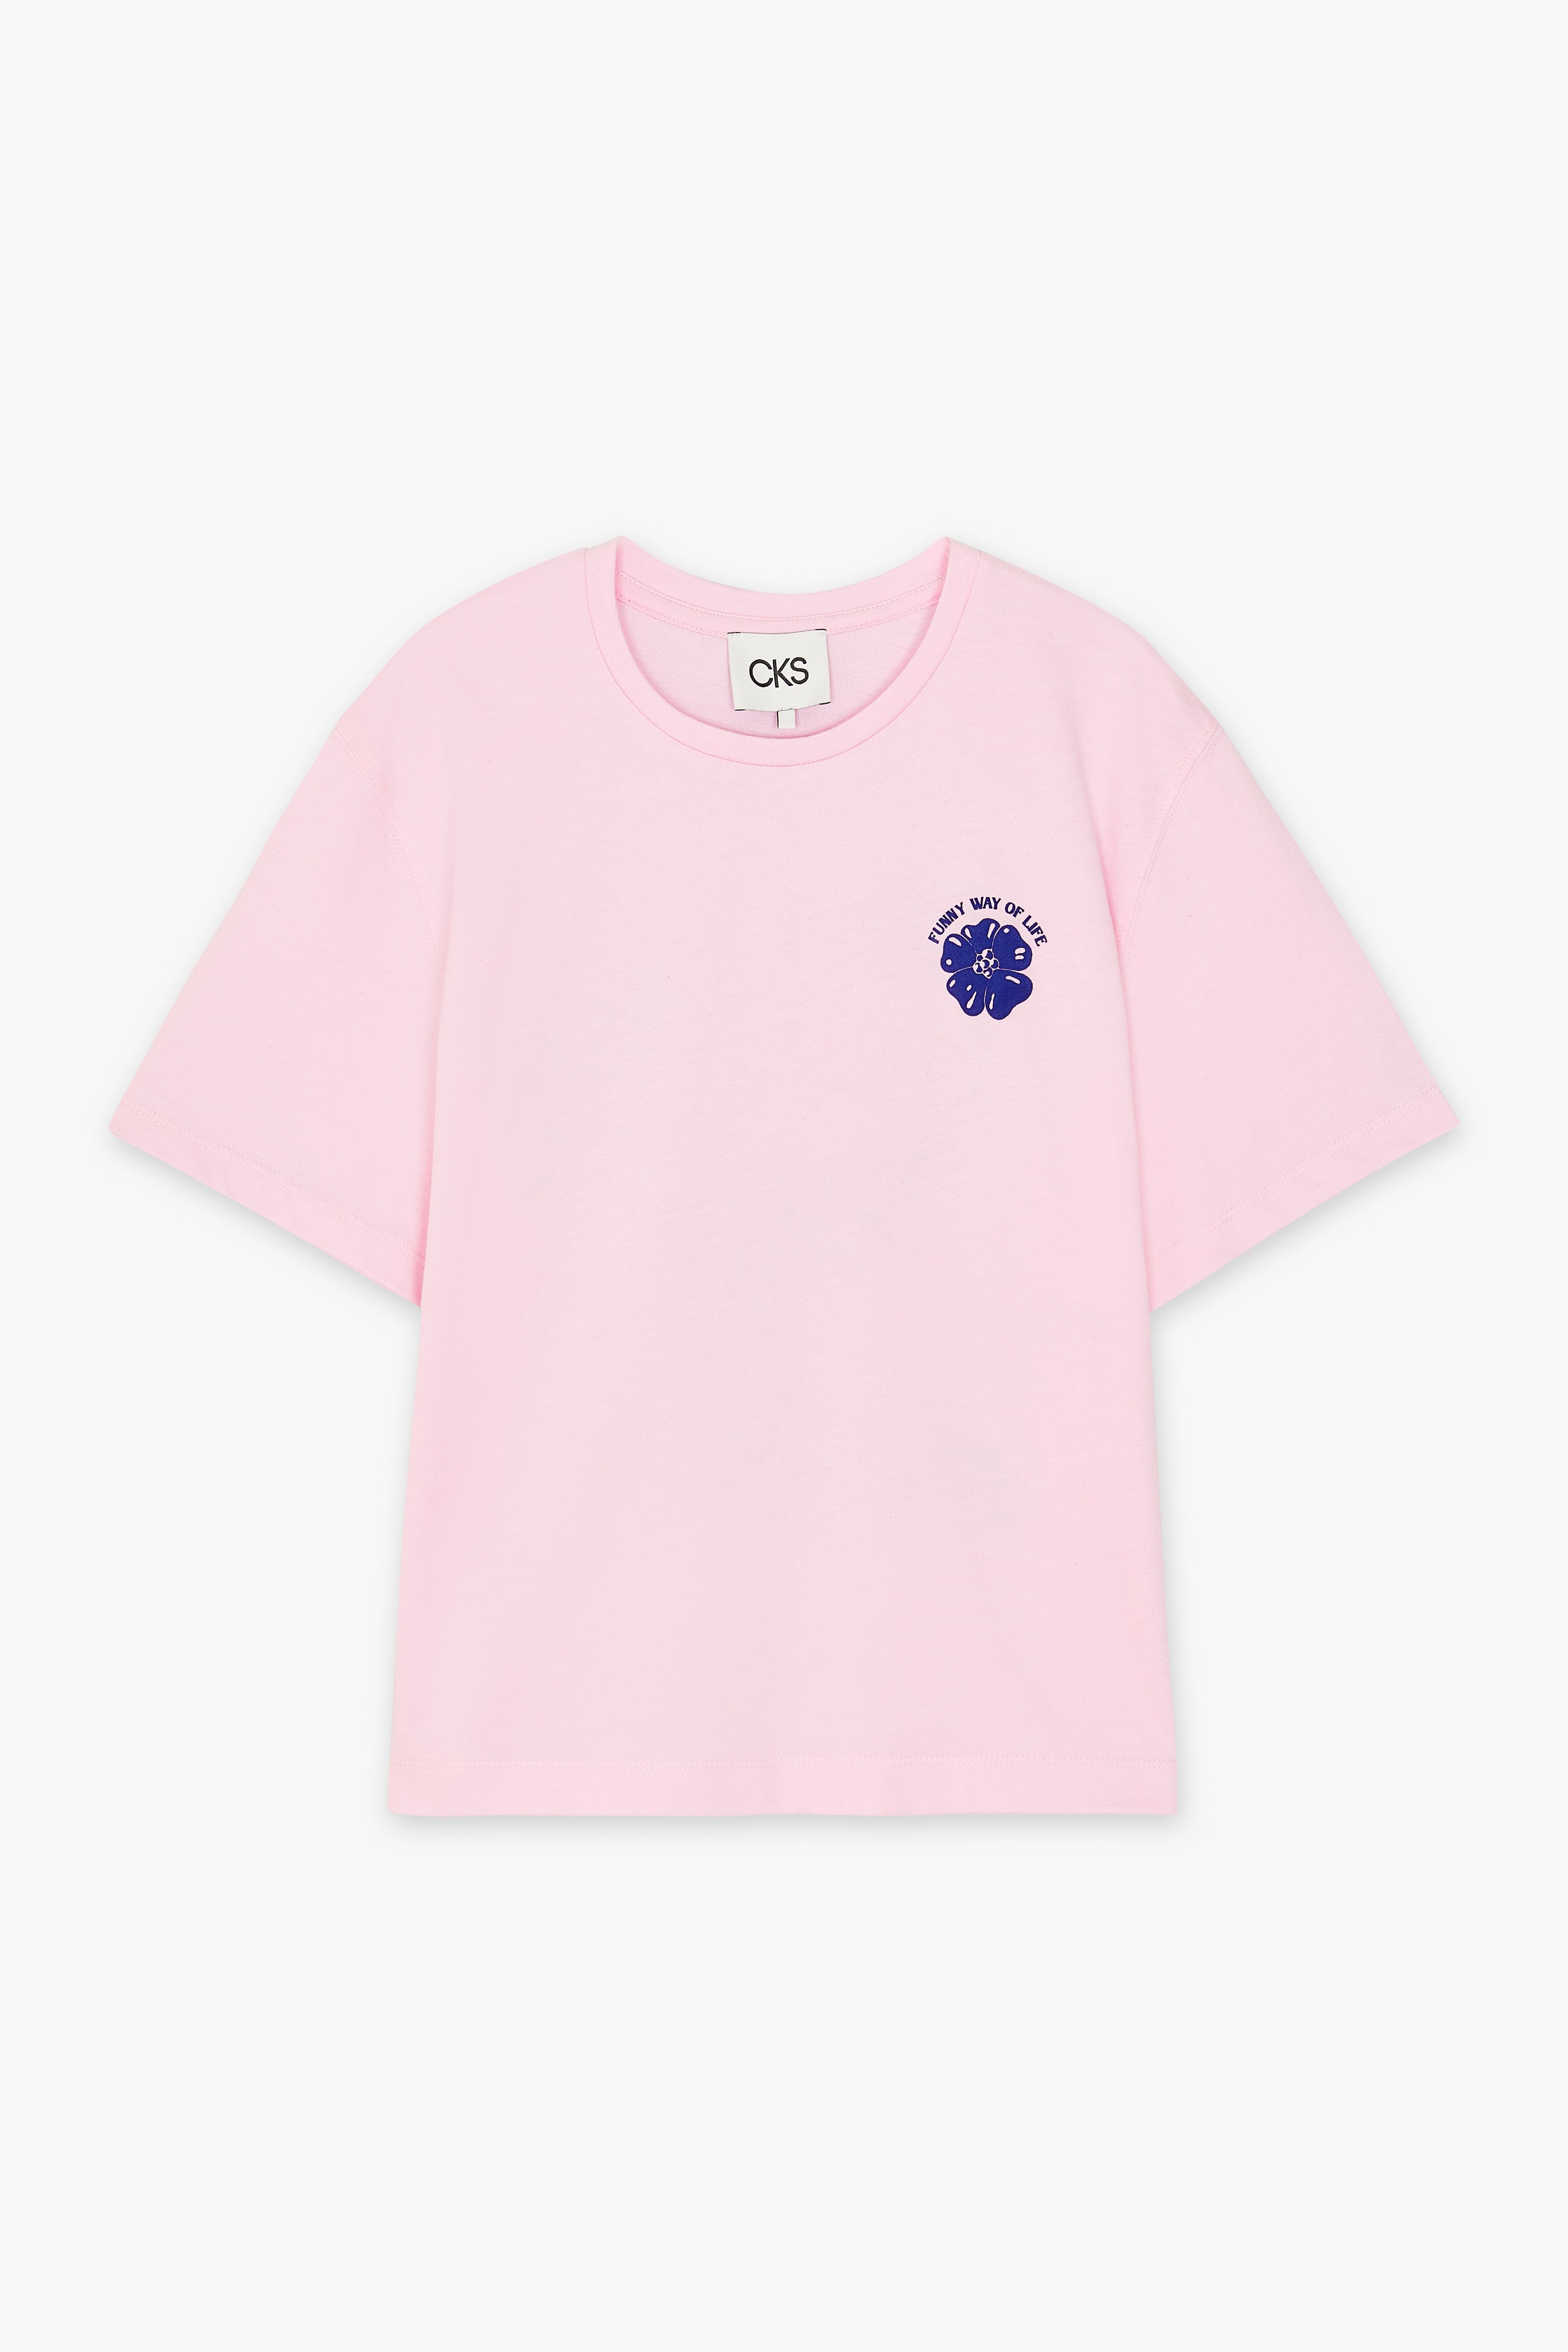 CKS Dames - SARIA - t-shirt à manches courtes - rose clair